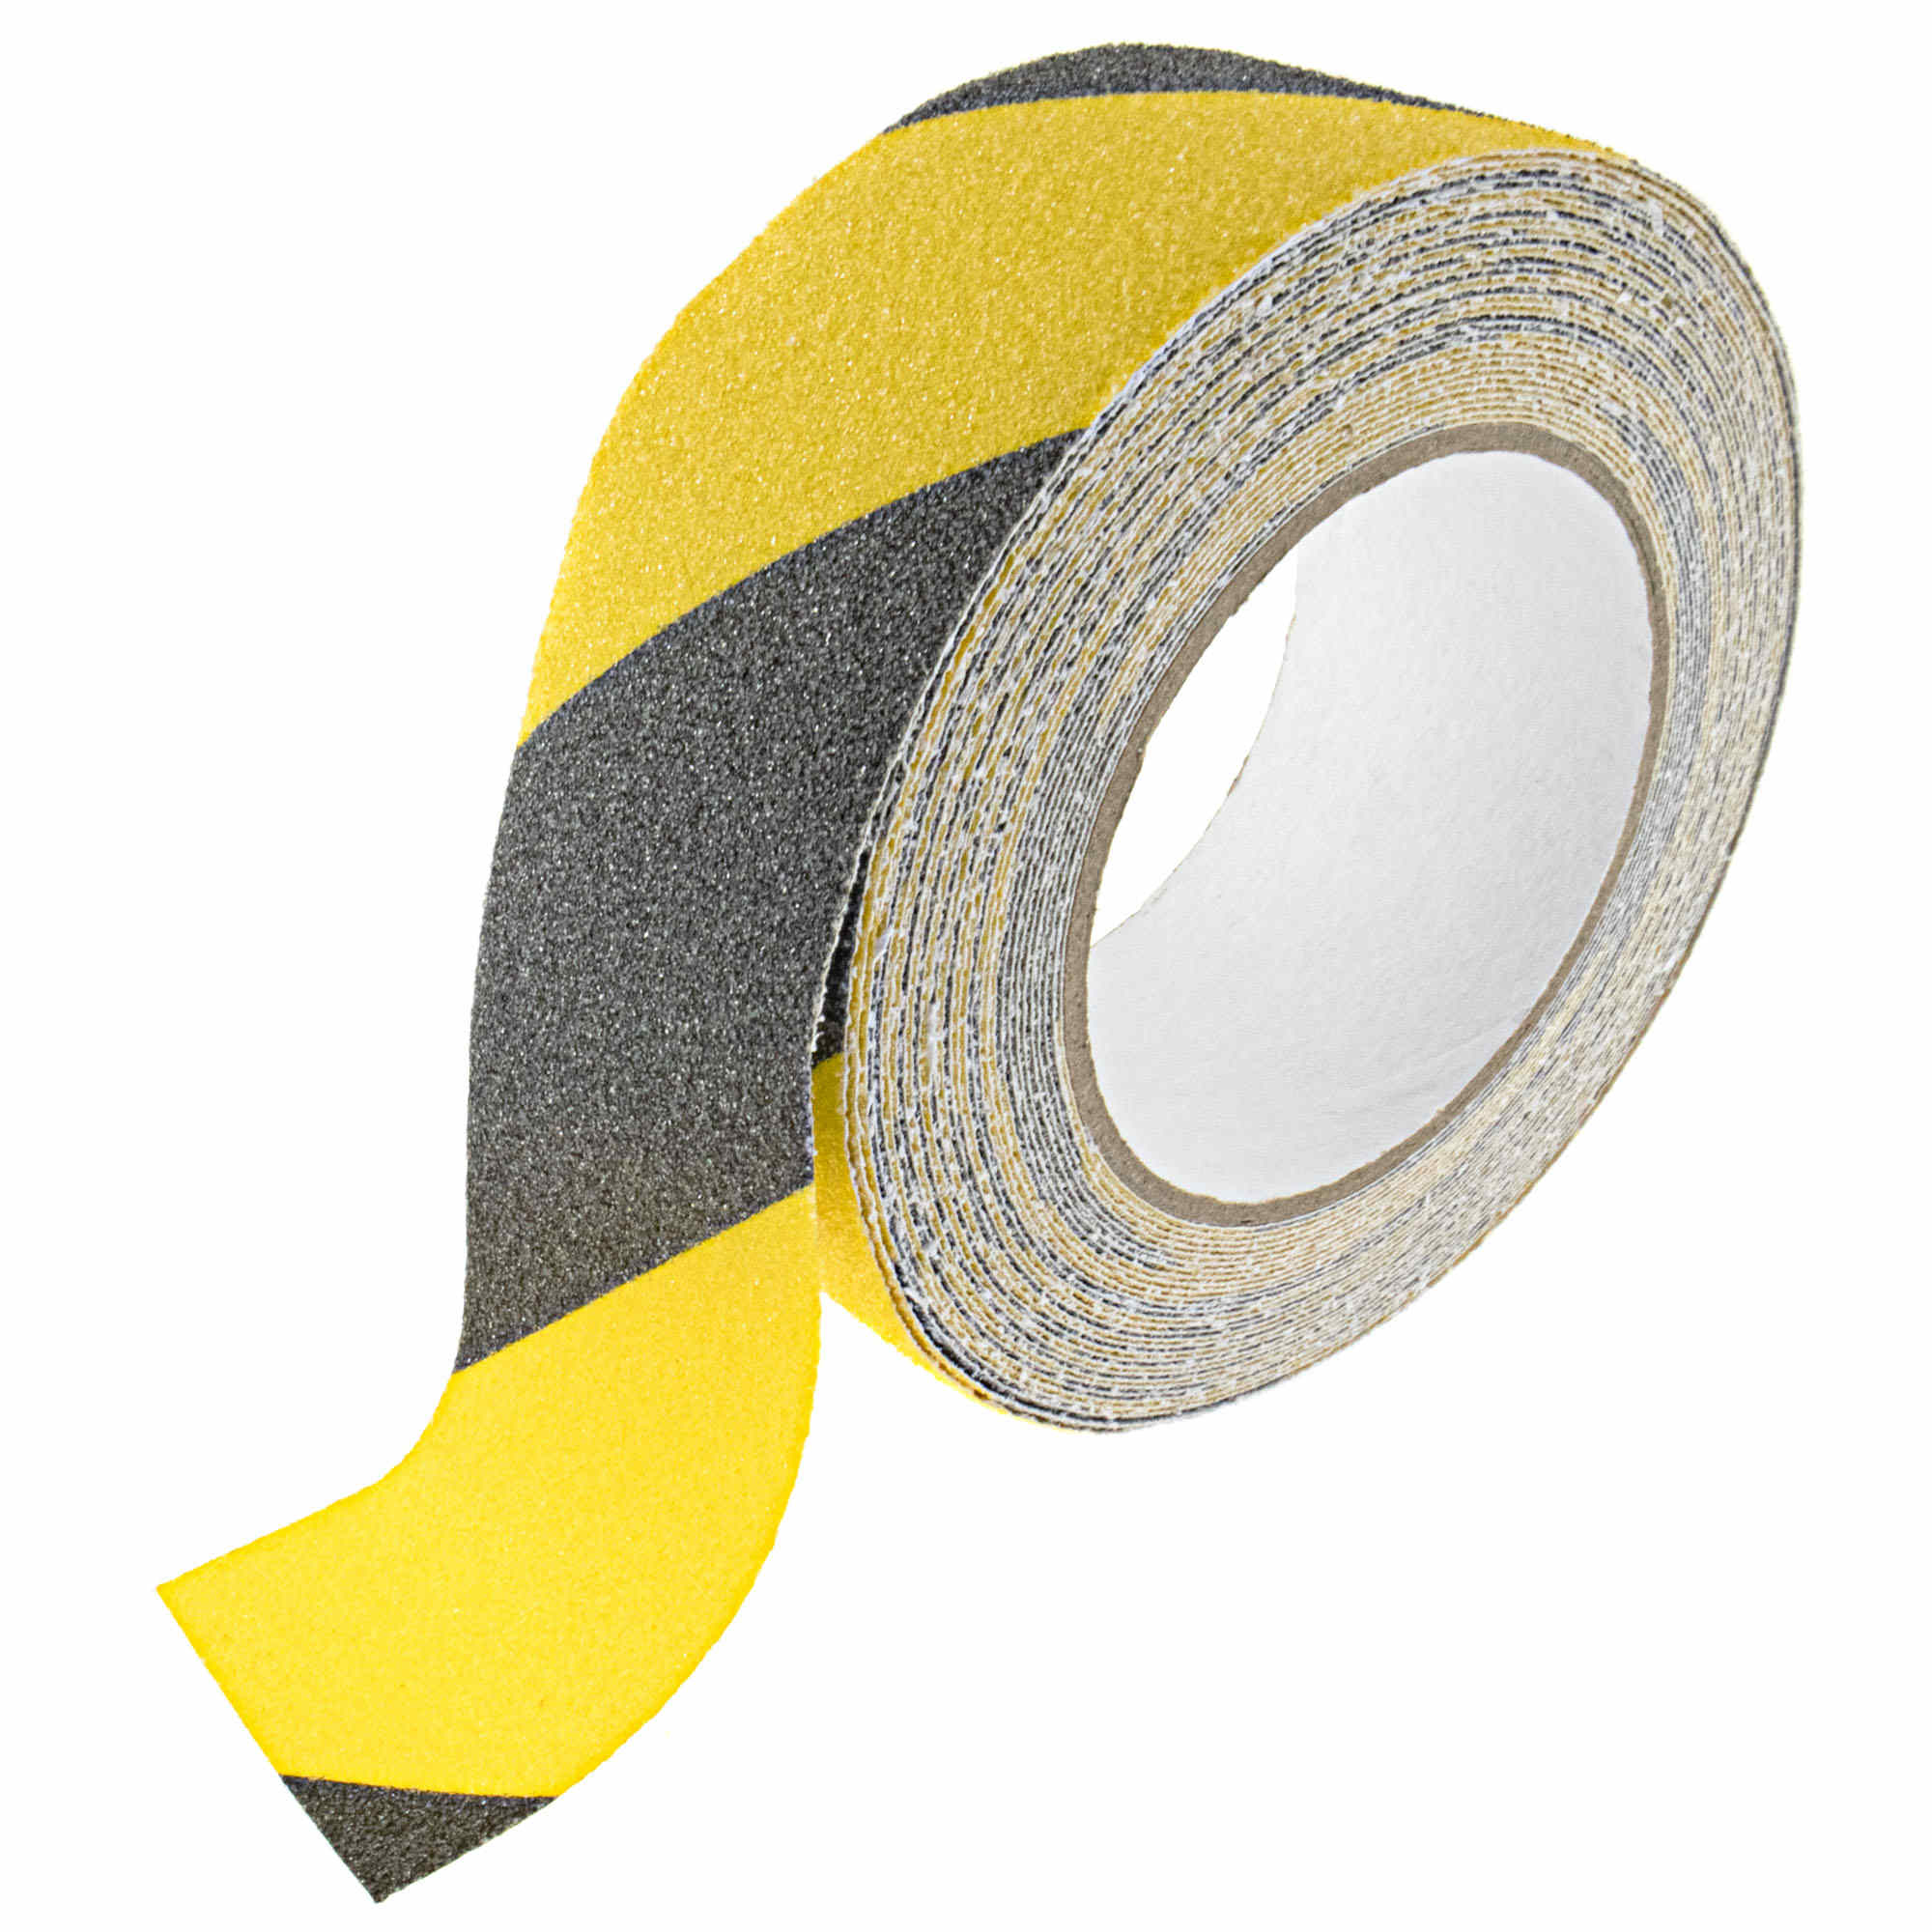 Antirutschband 5,0cmx10m, grob, schwarz/gelb